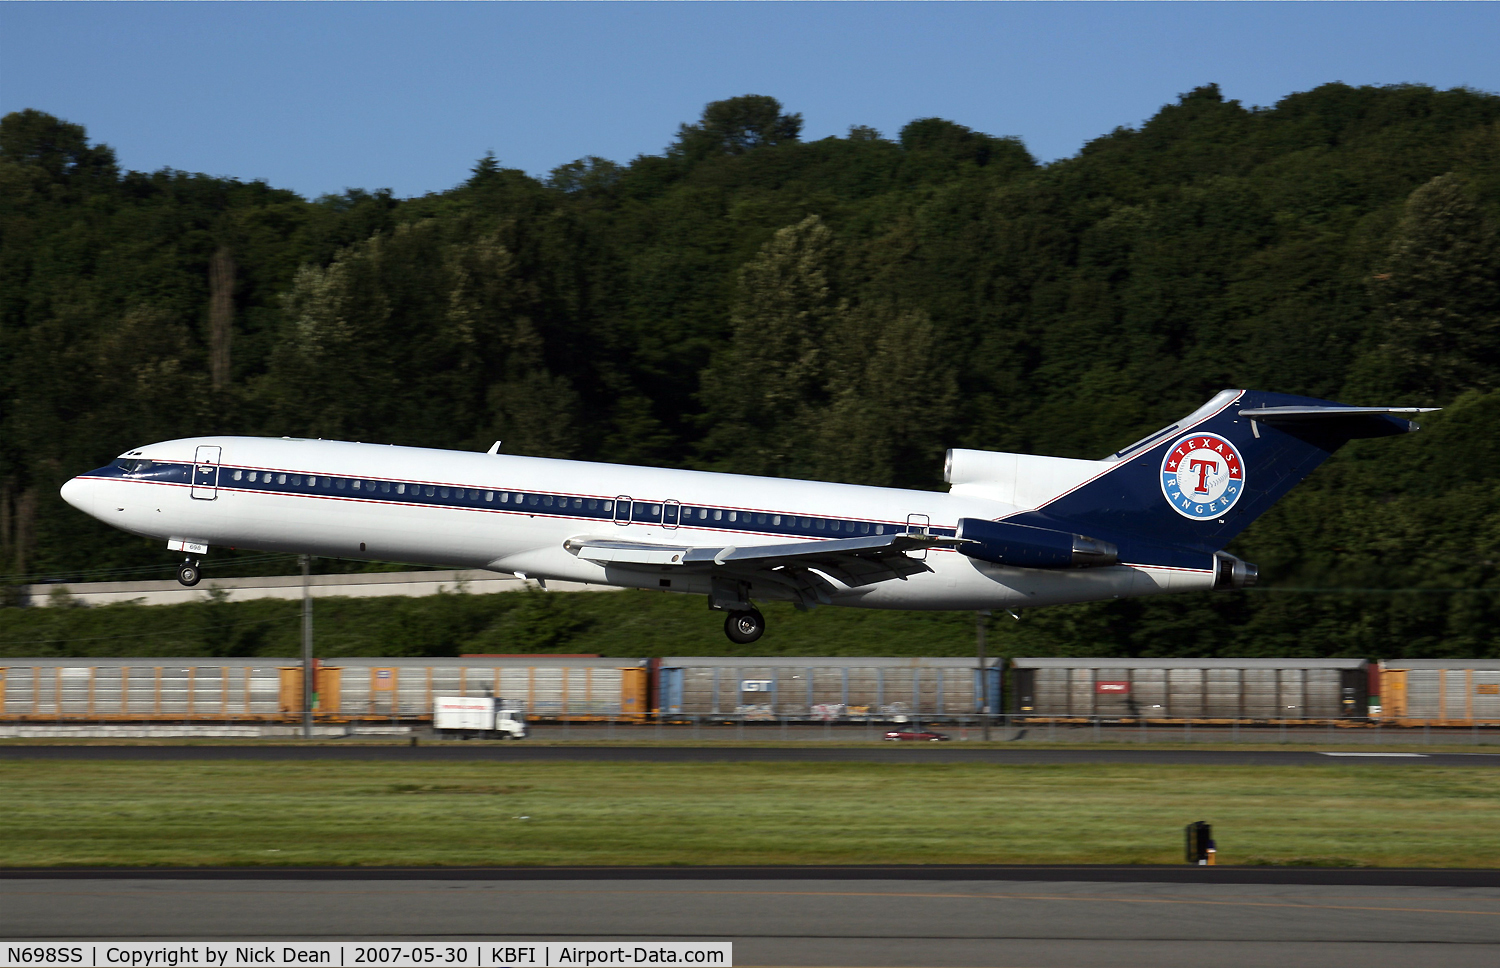 N698SS, 1977 Boeing 727-223 C/N 21369, Texas Rangers side